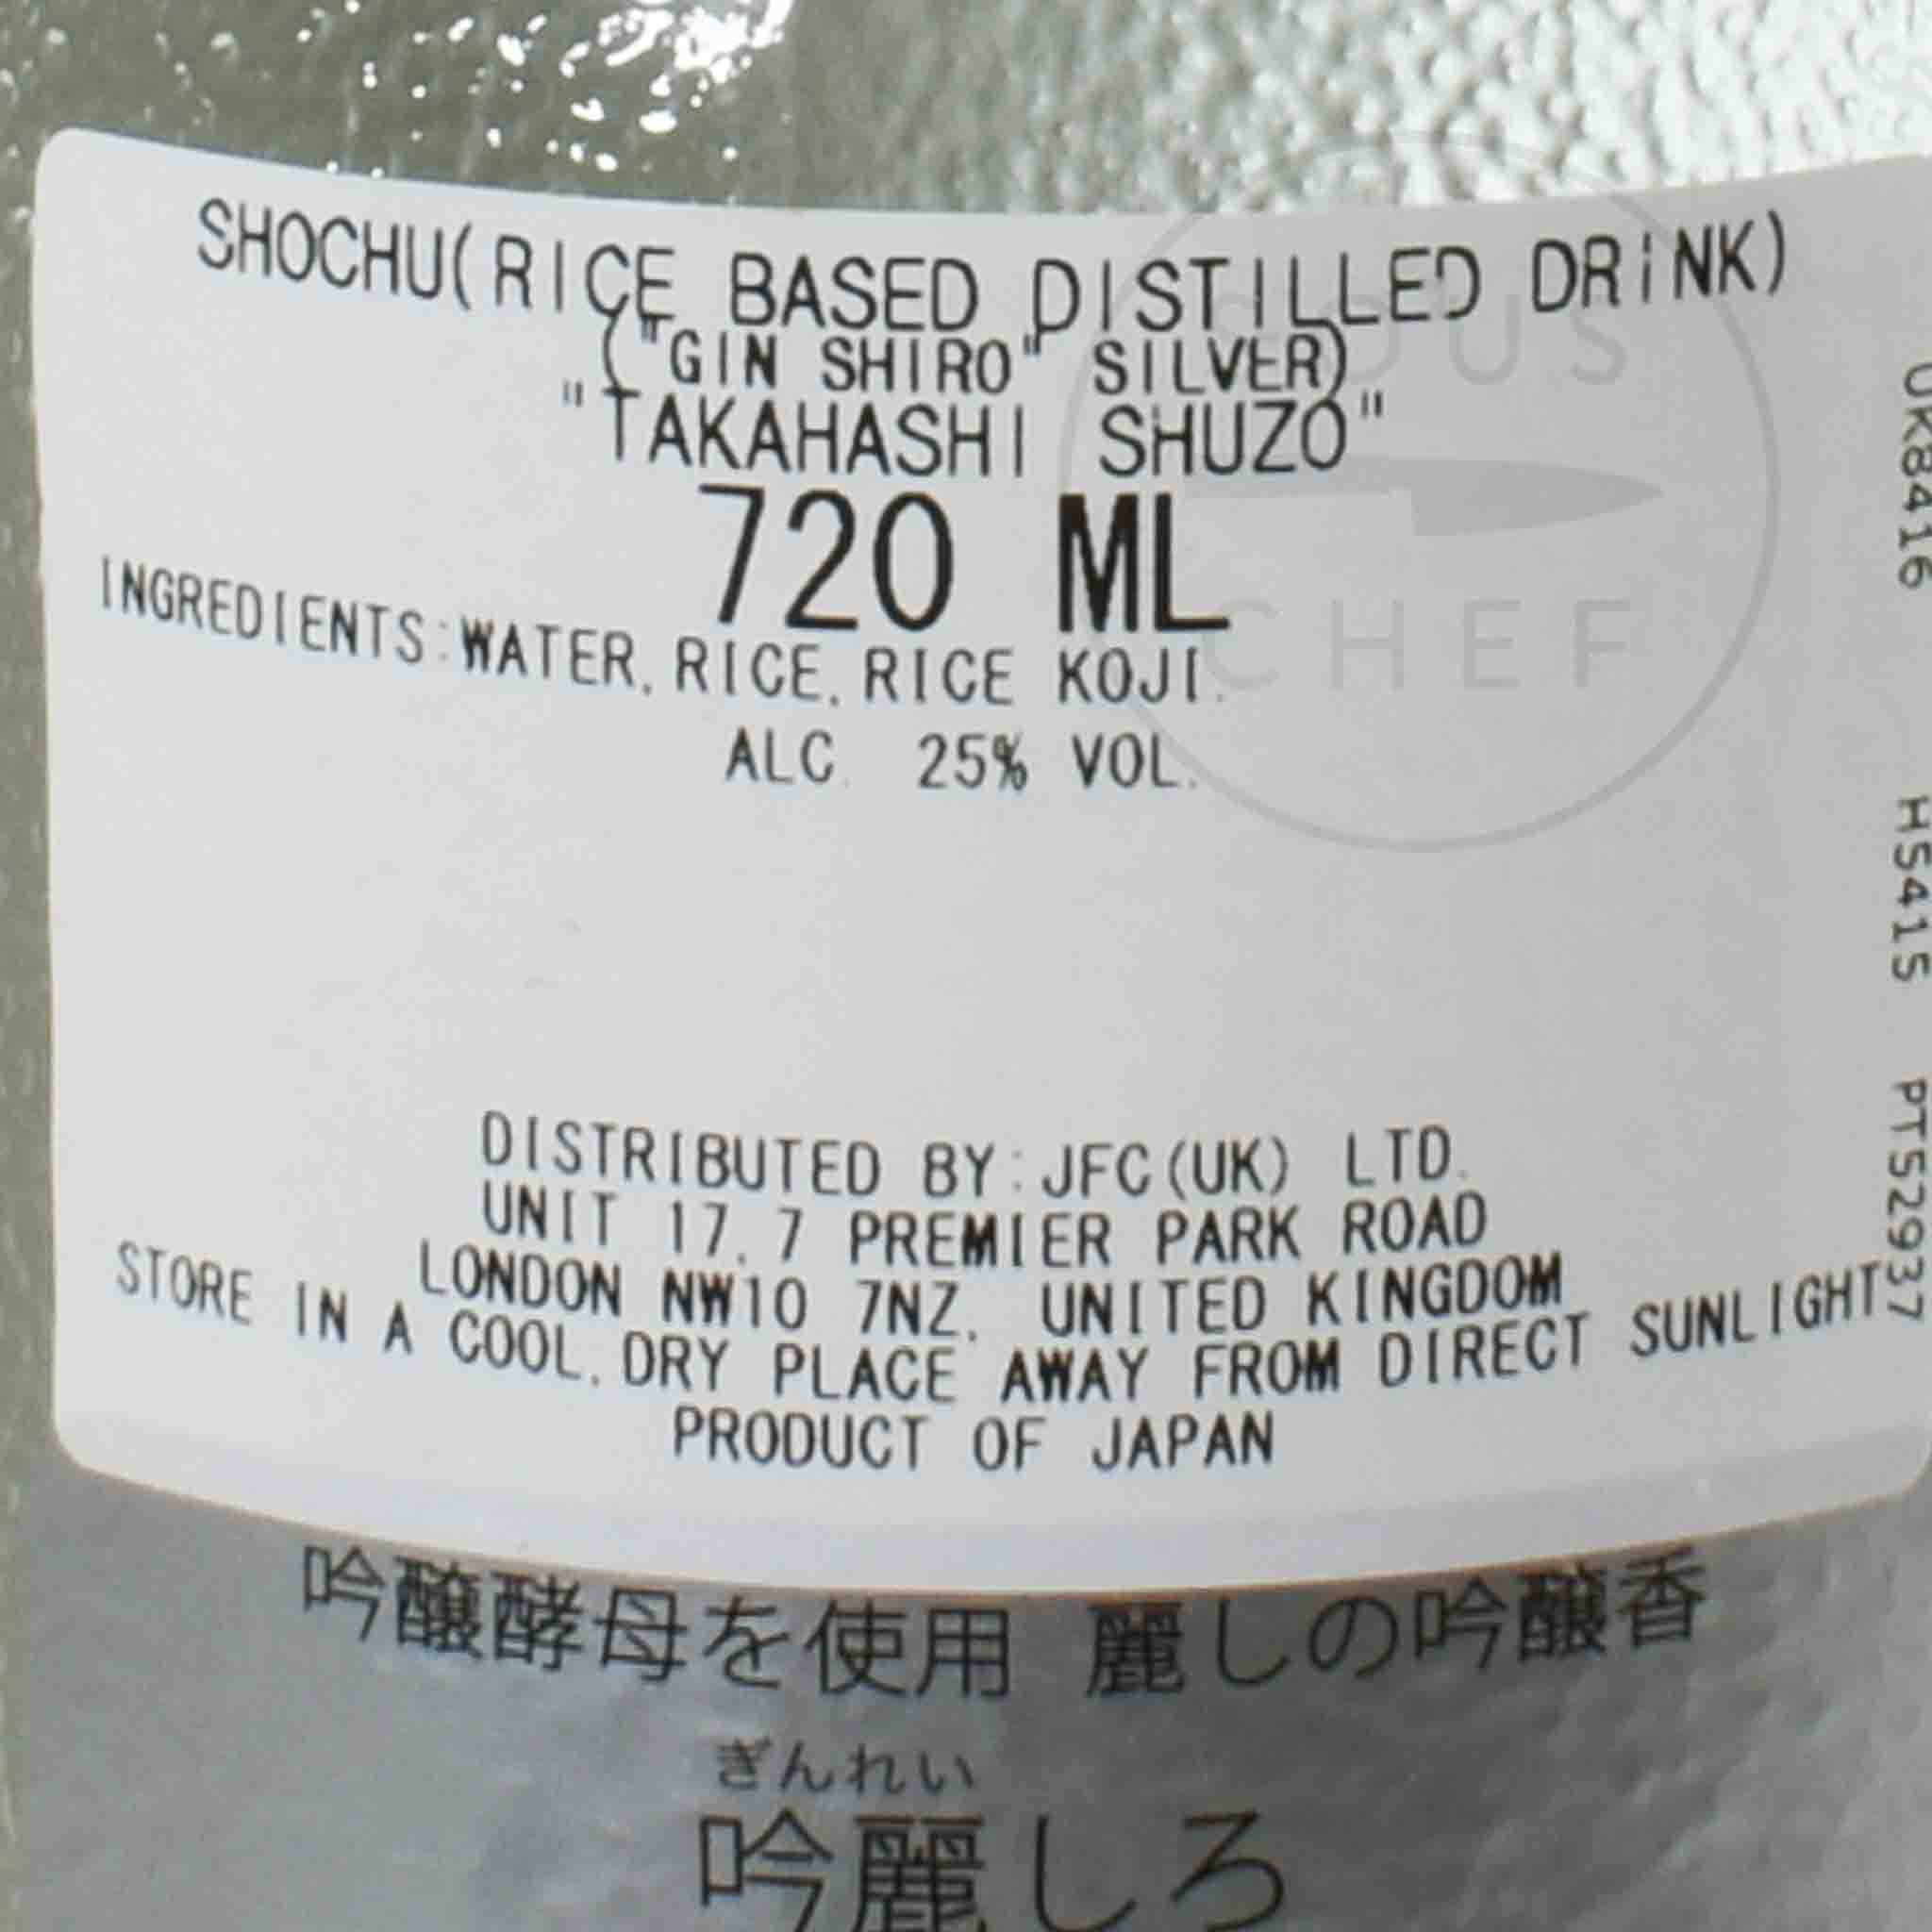 Takahashi Hakutake Gin Shiro (Silver), 720ml